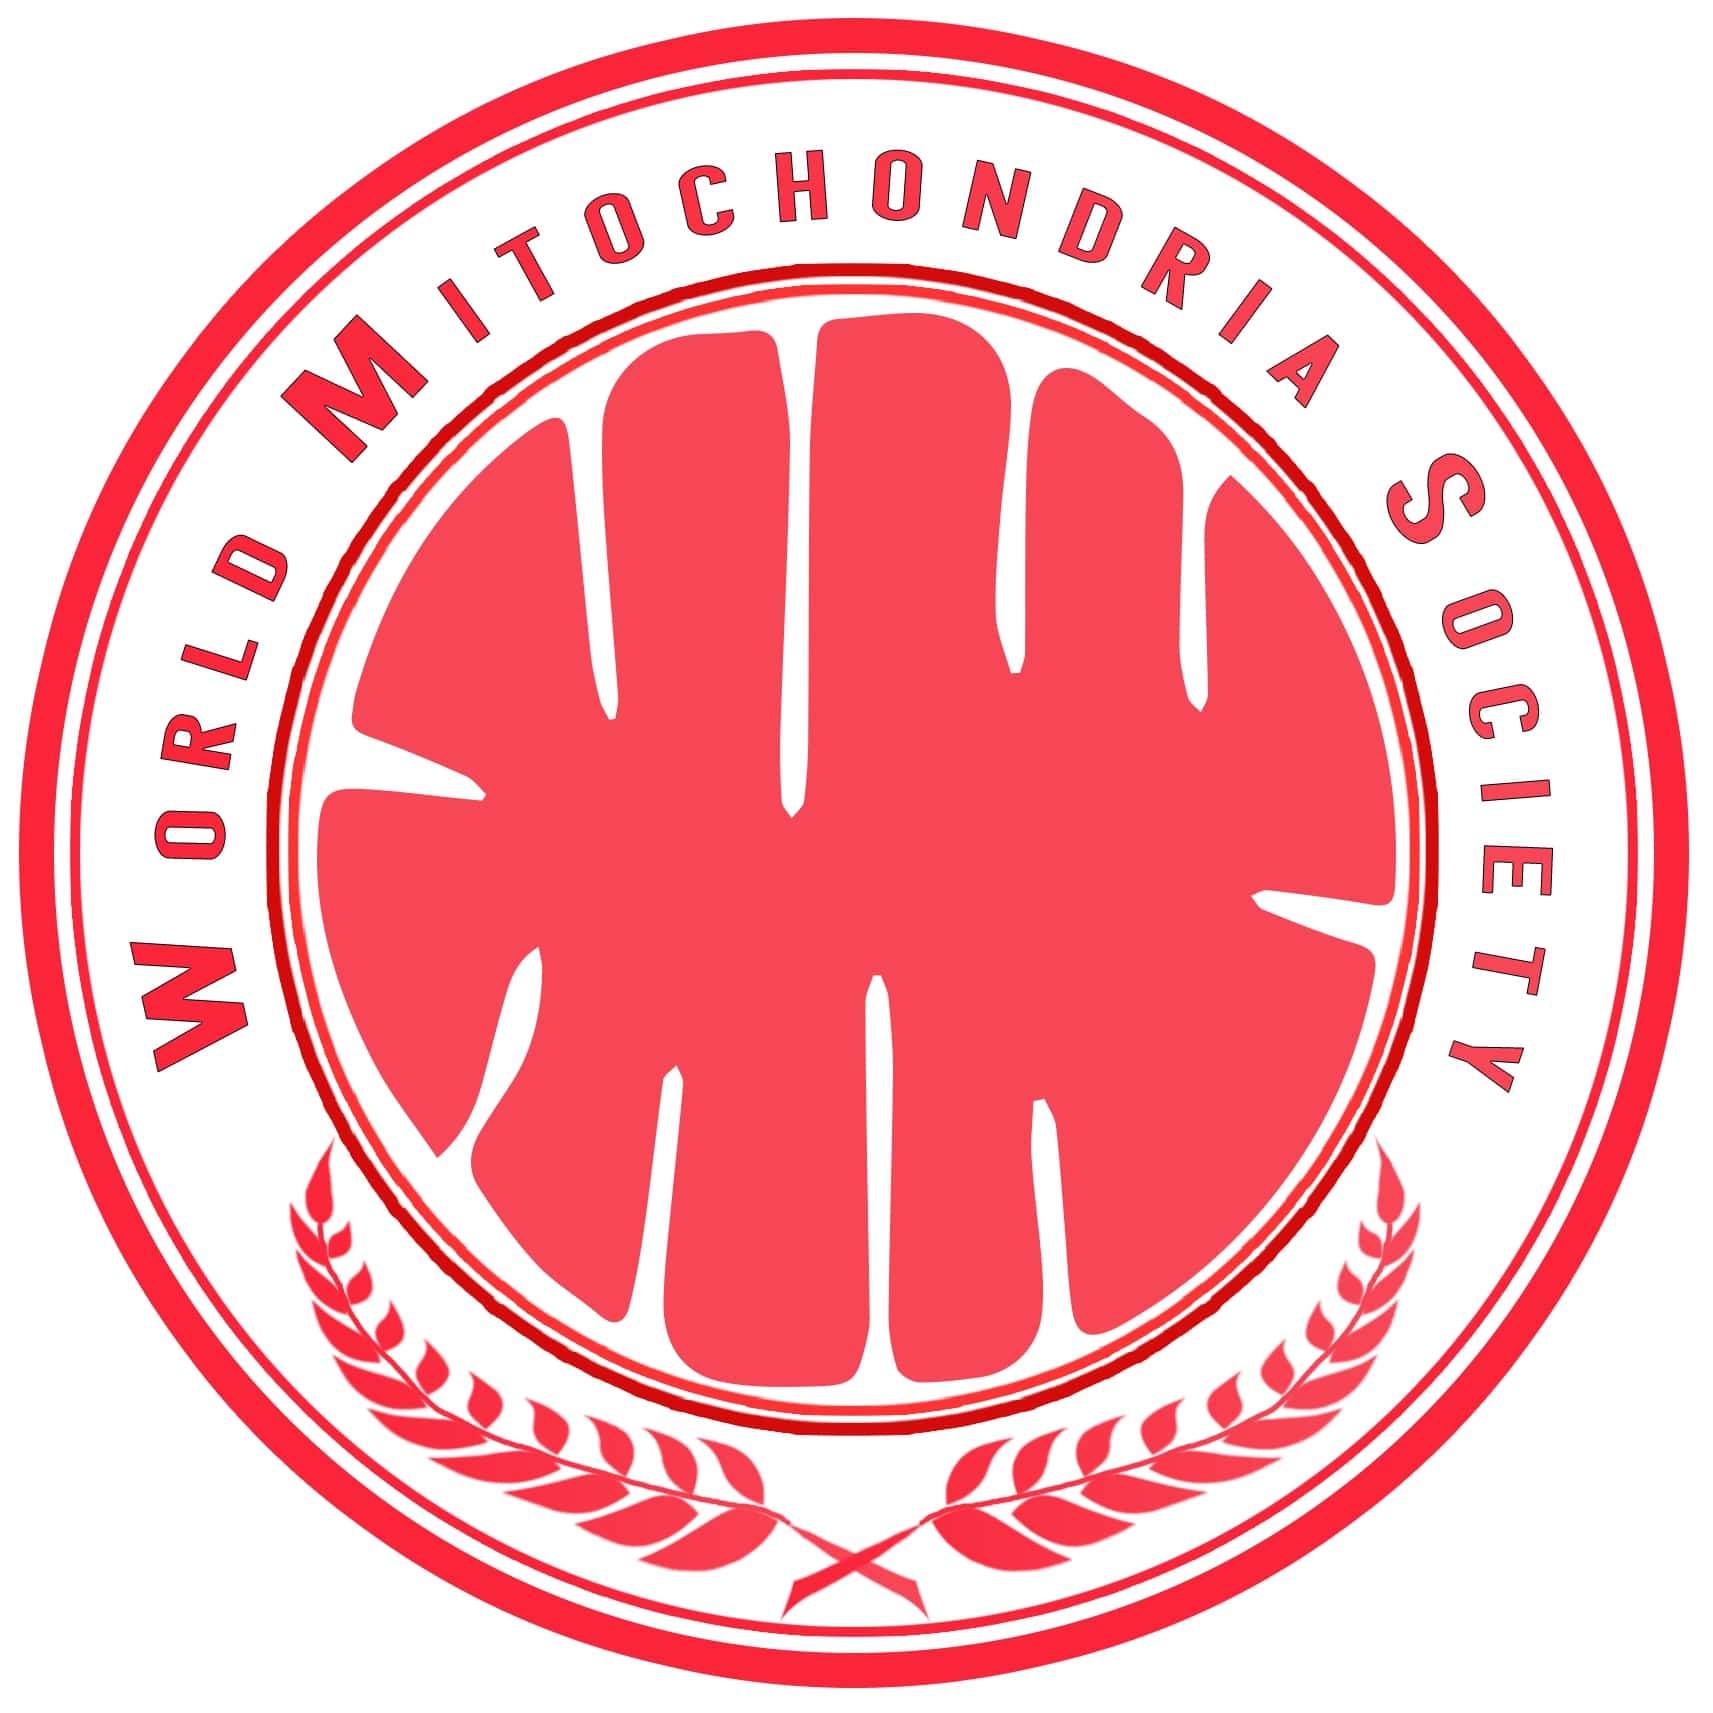 Mitochondria-logo-original